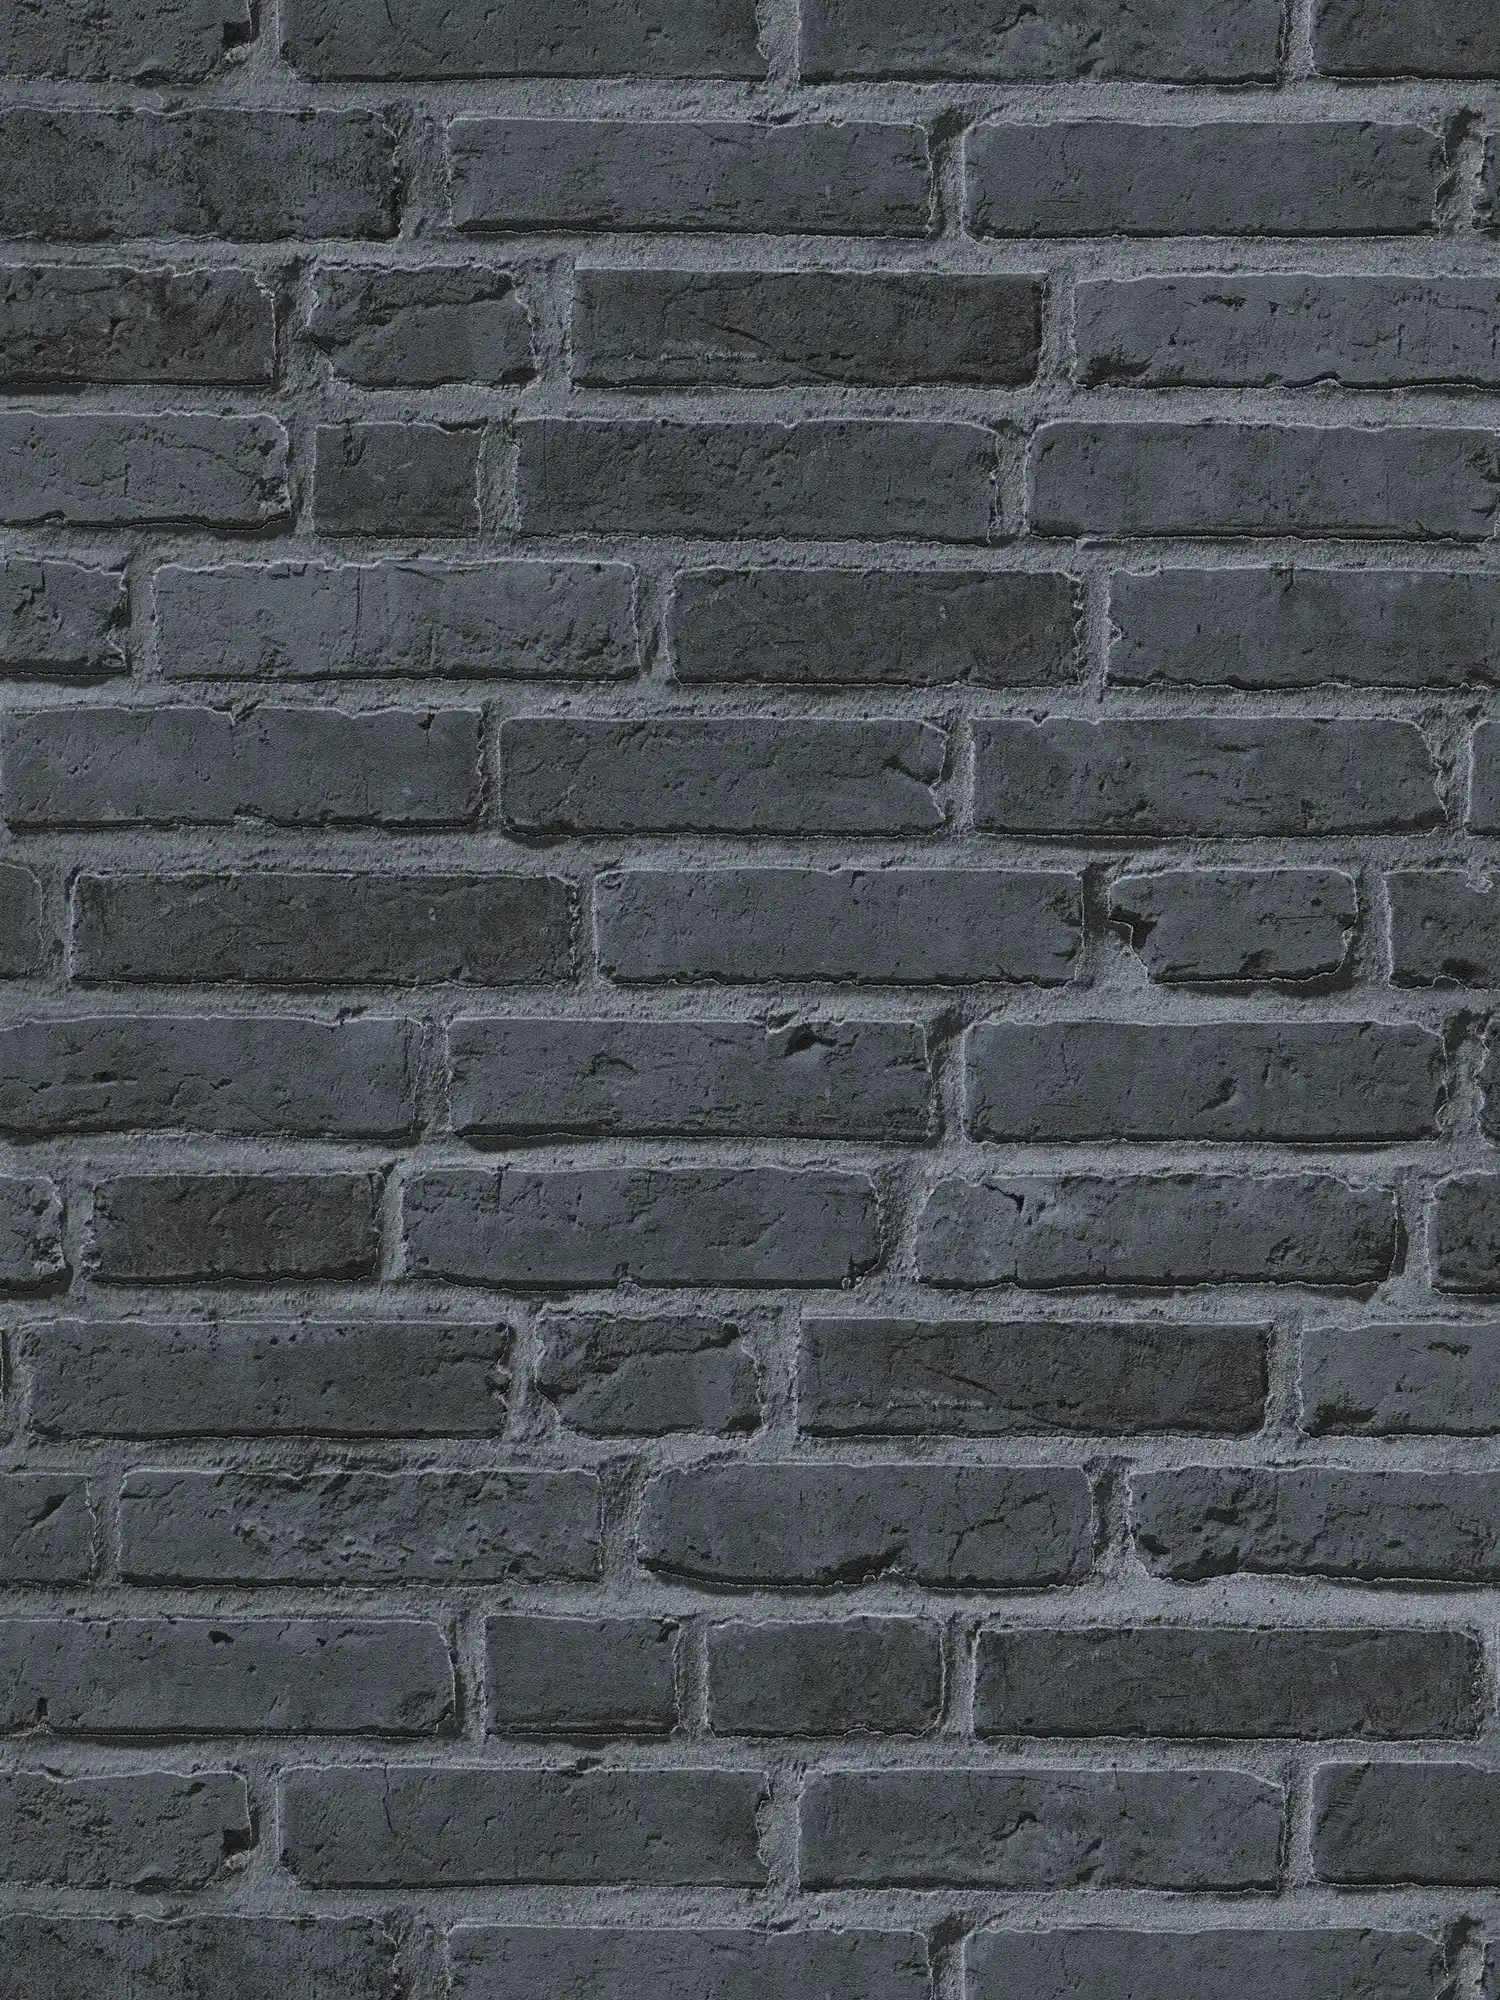         Papier peint imitation pierre avec briques noires - noir, gris
    